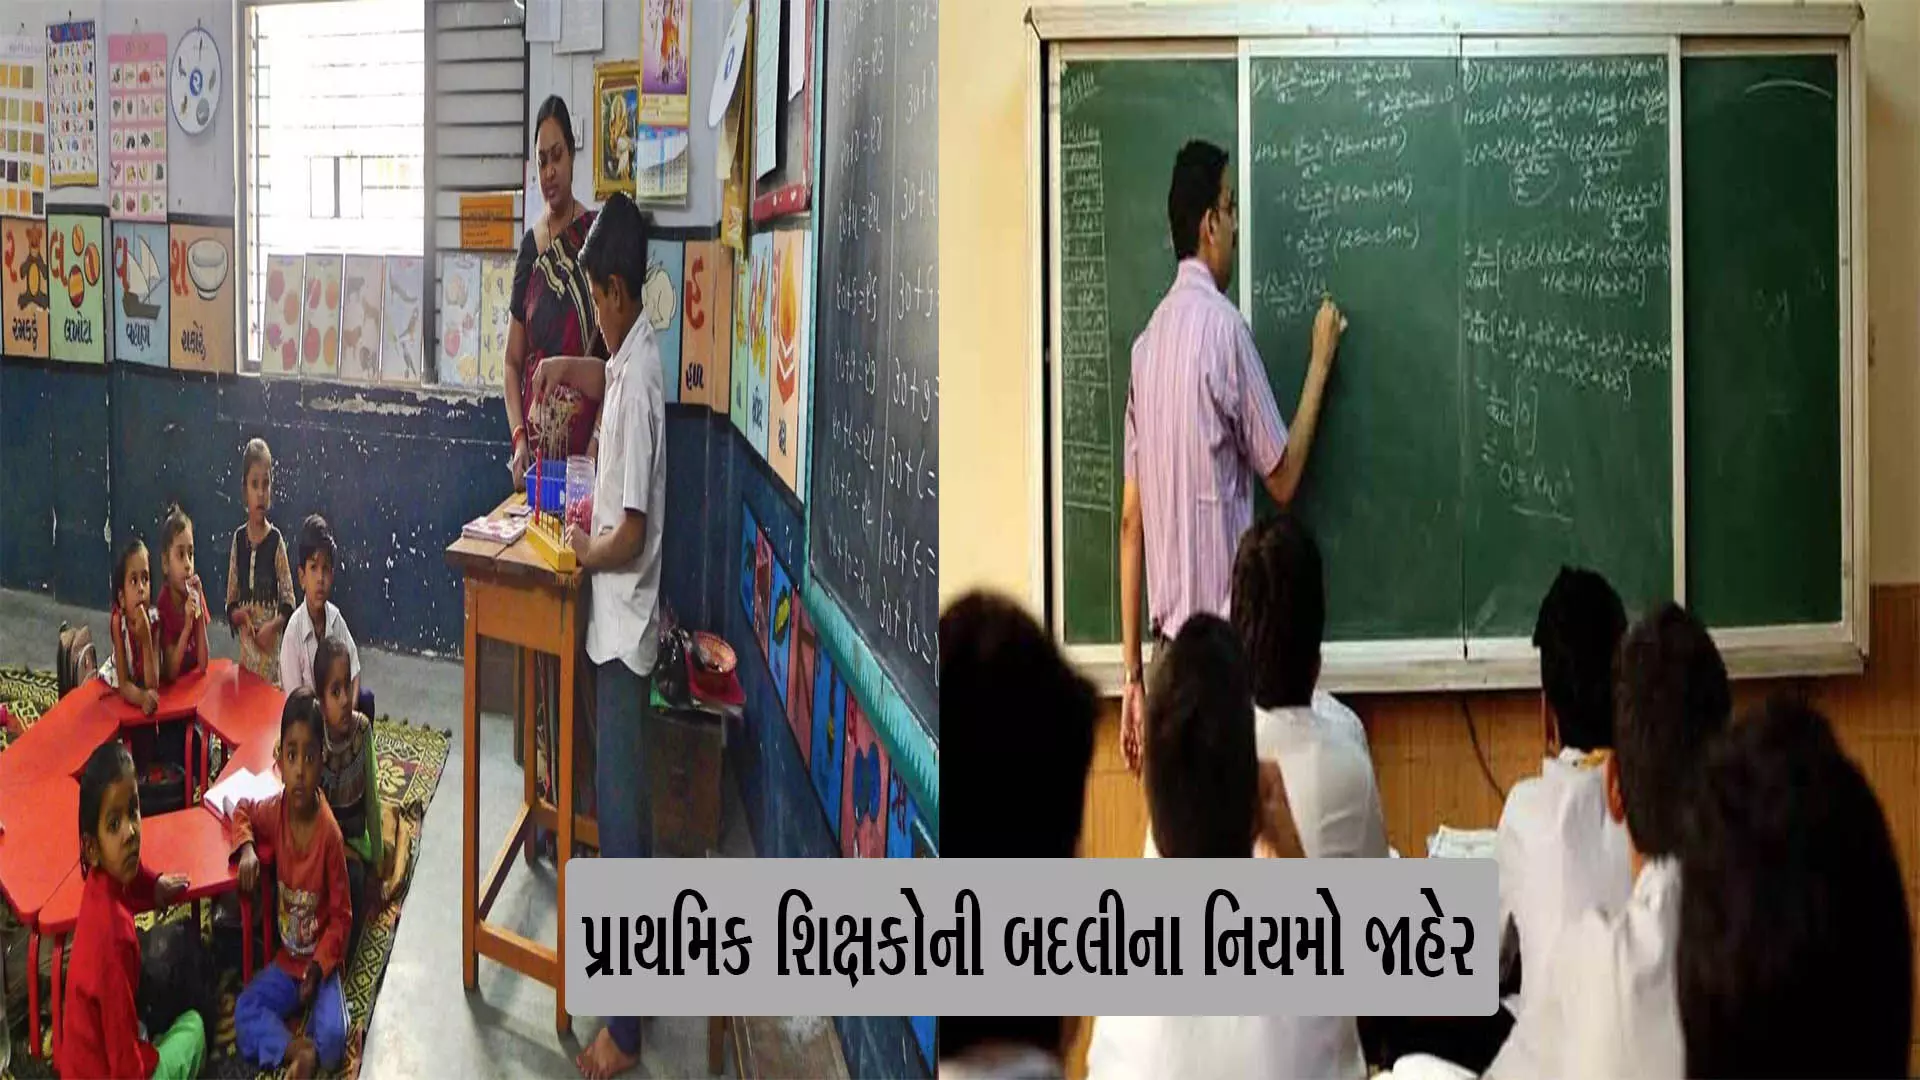 ગુજરાતમાં પ્રાથમિક શિક્ષકોની બદલીના નિયમો જાહેર: 40 હજાર શિક્ષકોને થશે સીધો ફાયદો